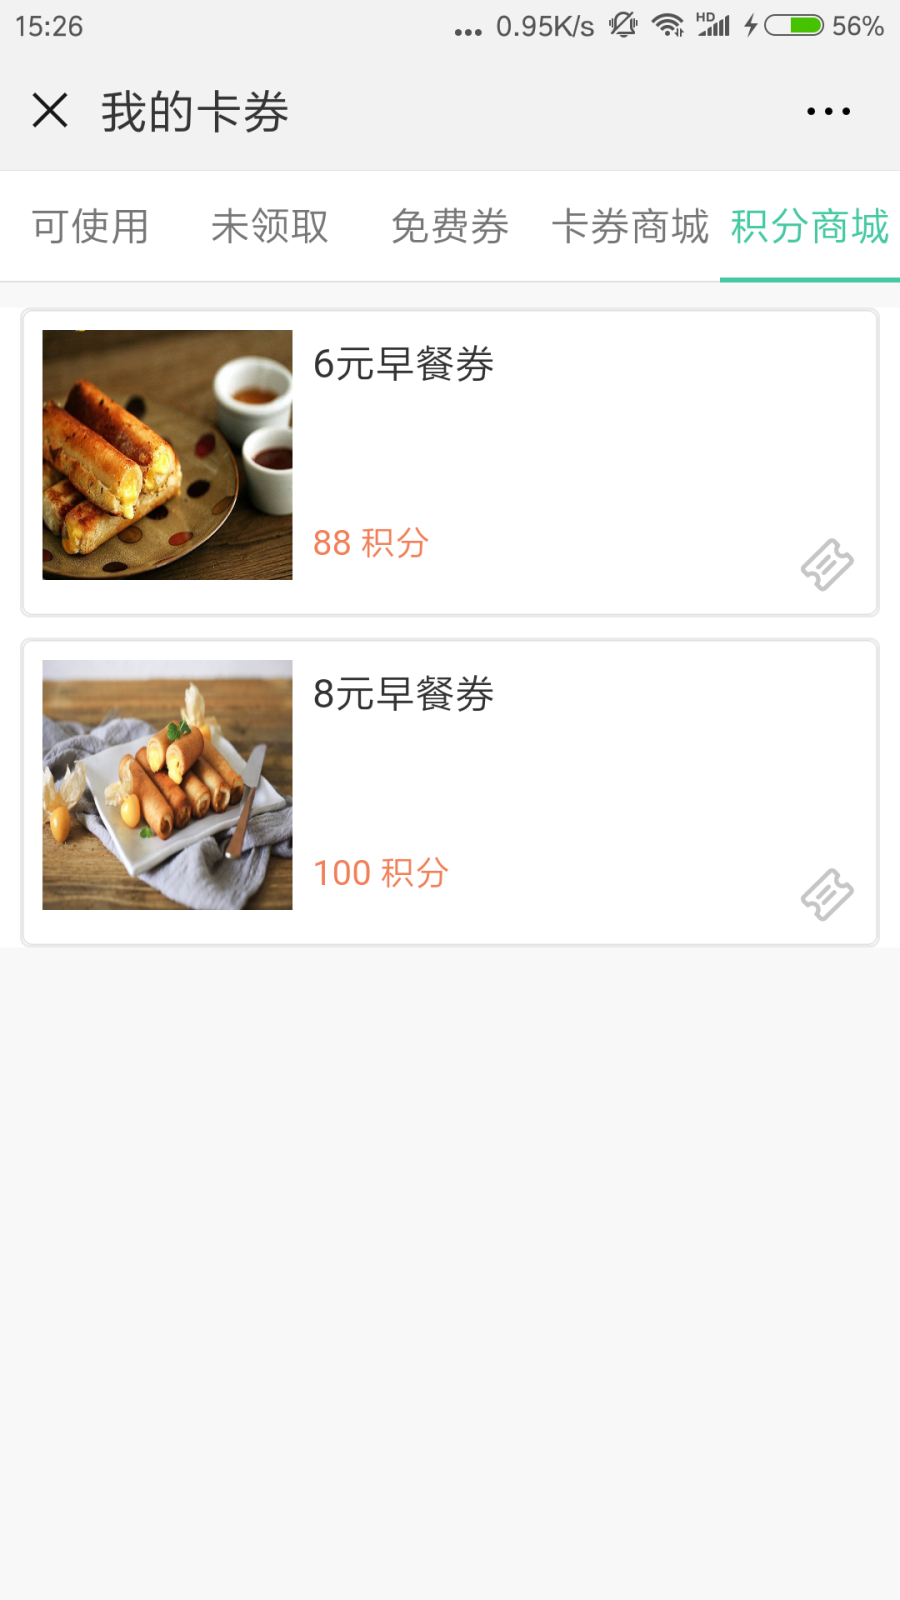 Screenshot_2018-08-25-15-26-22-686_com.tencent.mm.png